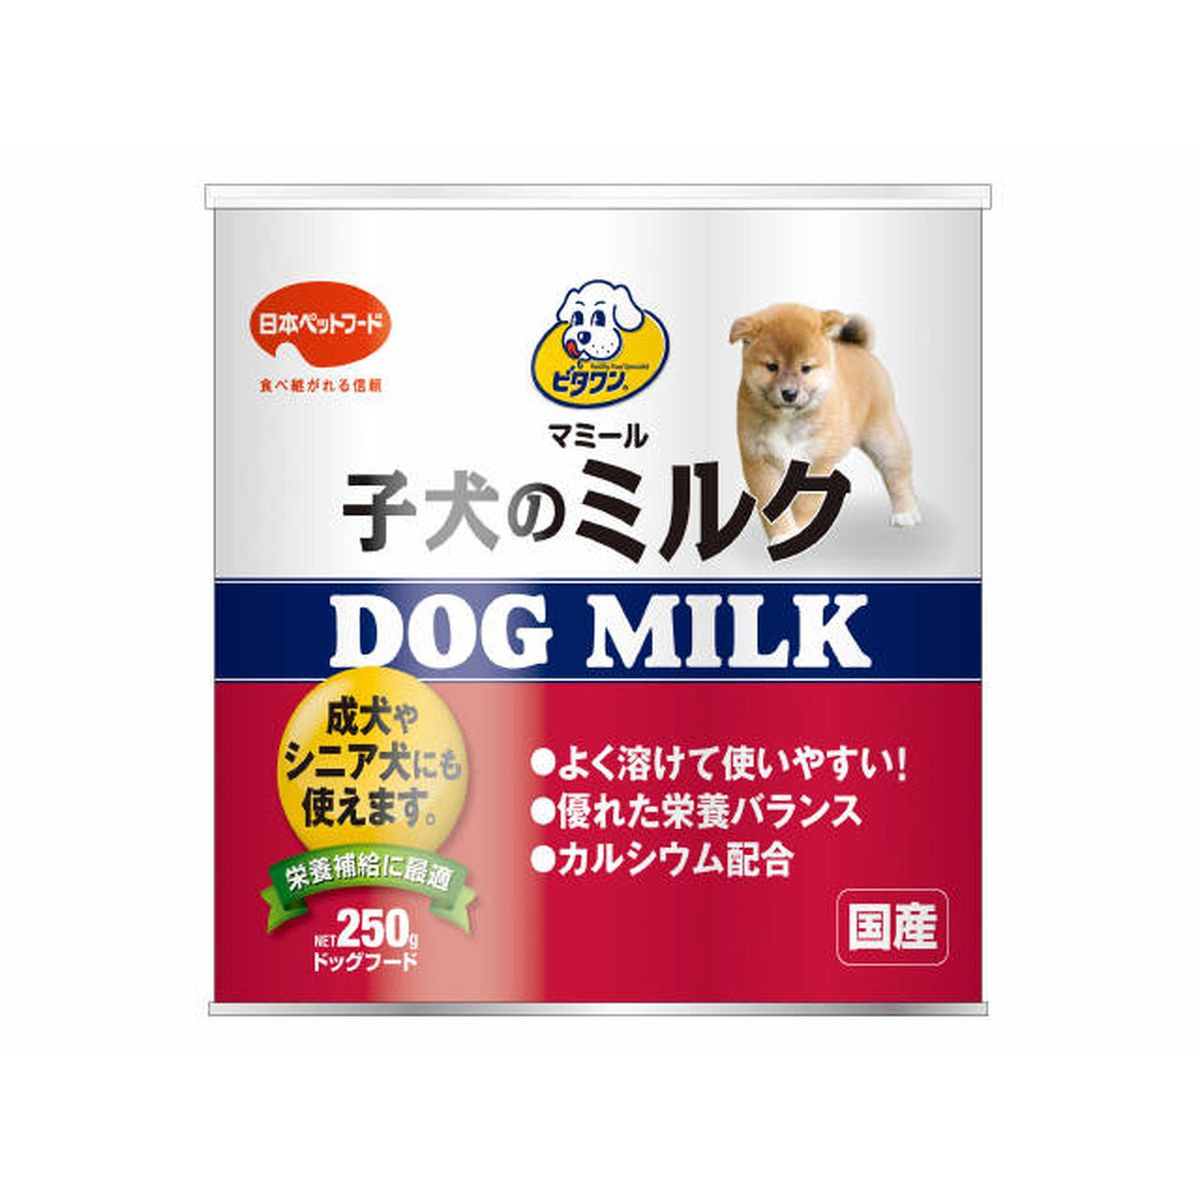 ビタワンマミール 子犬のミルク250g×6袋